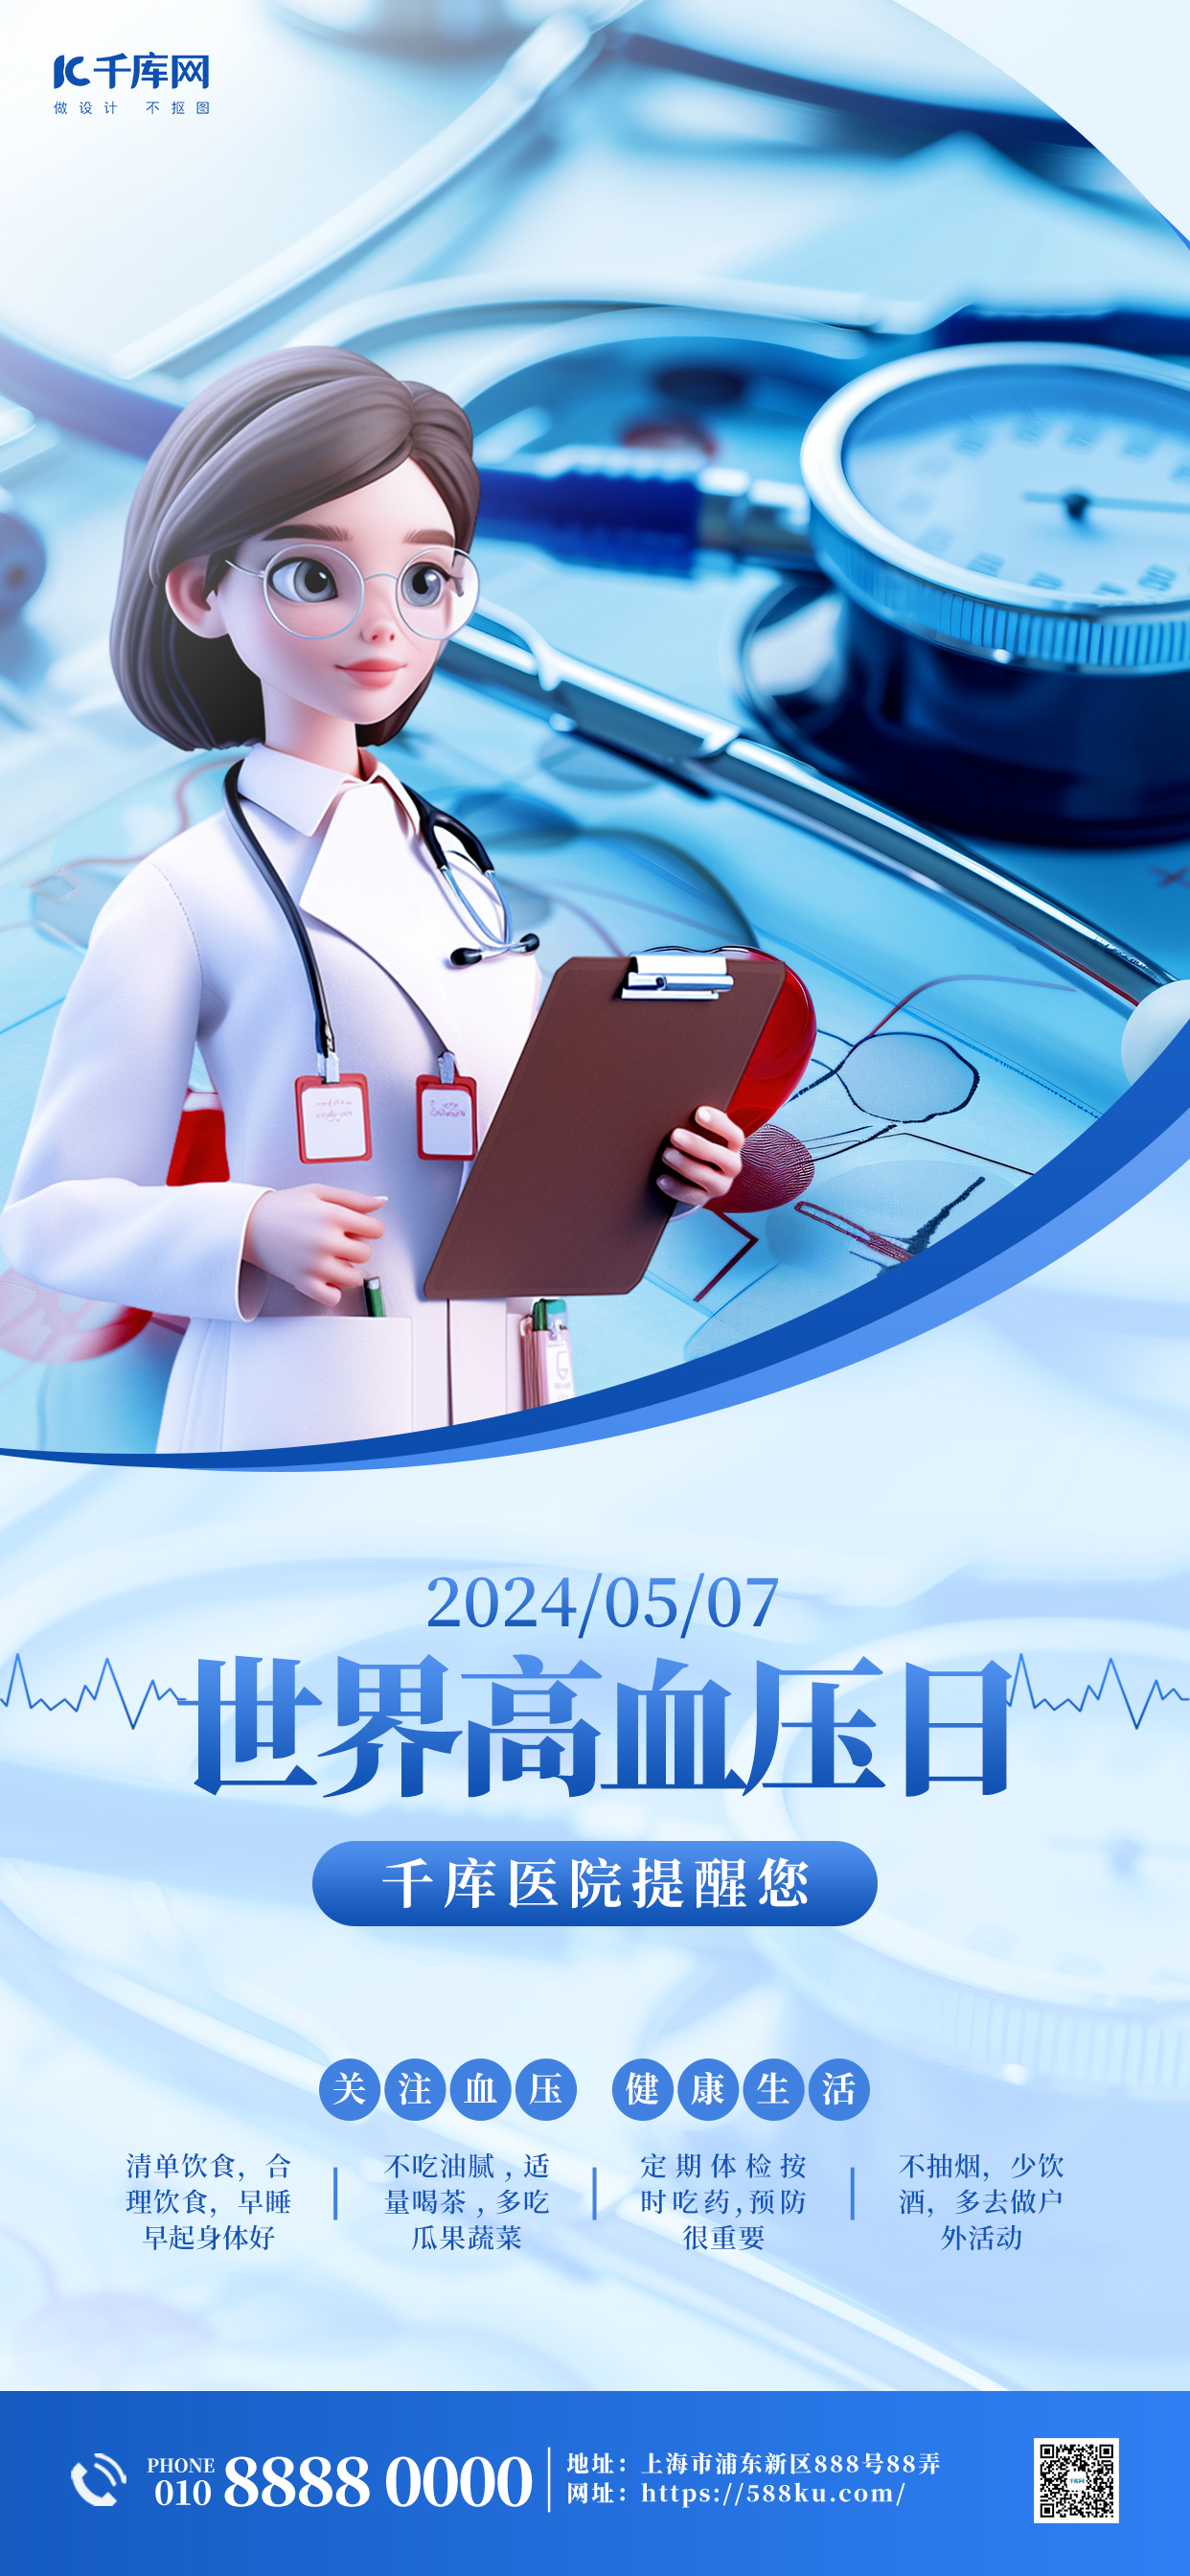 世界高血压日医疗健康蓝色简约大气宣传海报图片